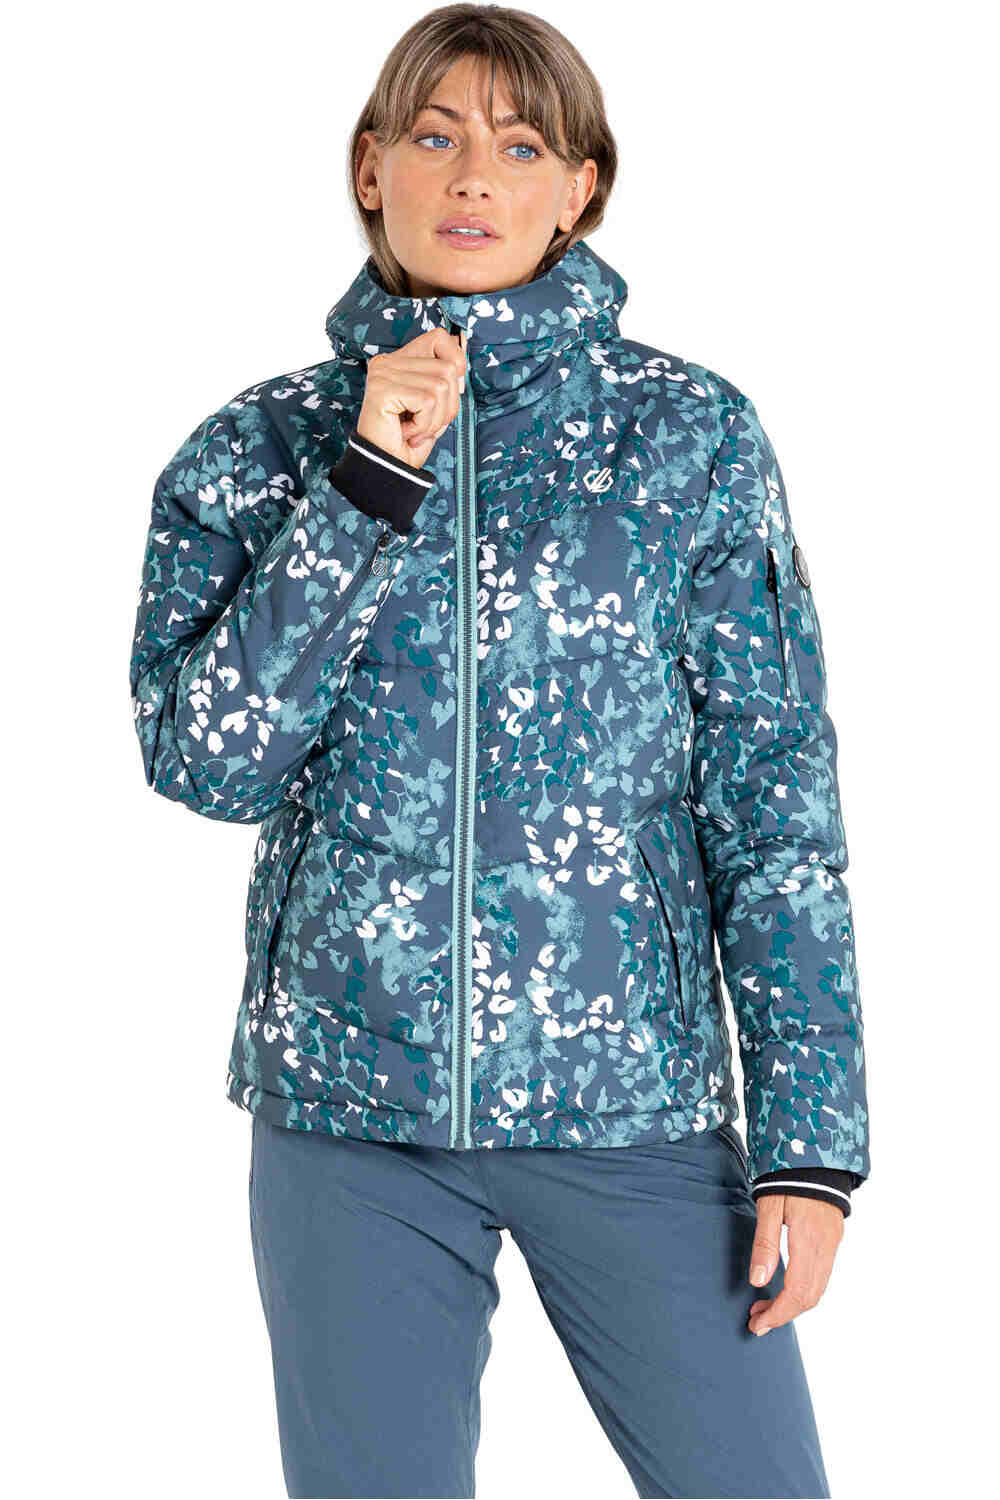 Dare2b chaqueta esquí mujer Verdict Jacket vista frontal